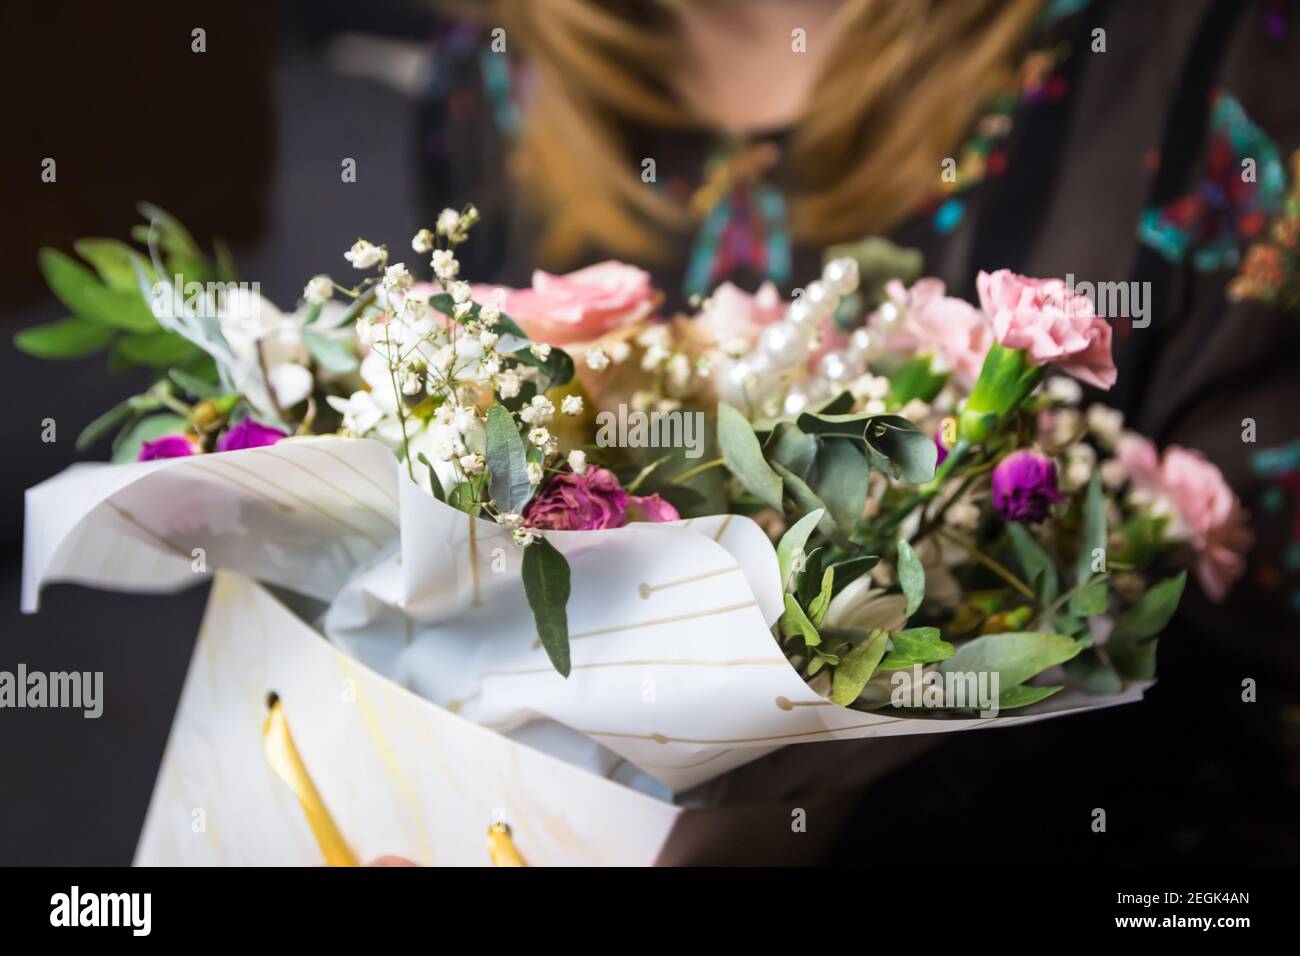 Fleuriste femme tenant un beau bouquet de fleurs aux couleurs rose et vert de roses, pivoine, myrte, feuilles de pistache. Femme obtenir présent Banque D'Images